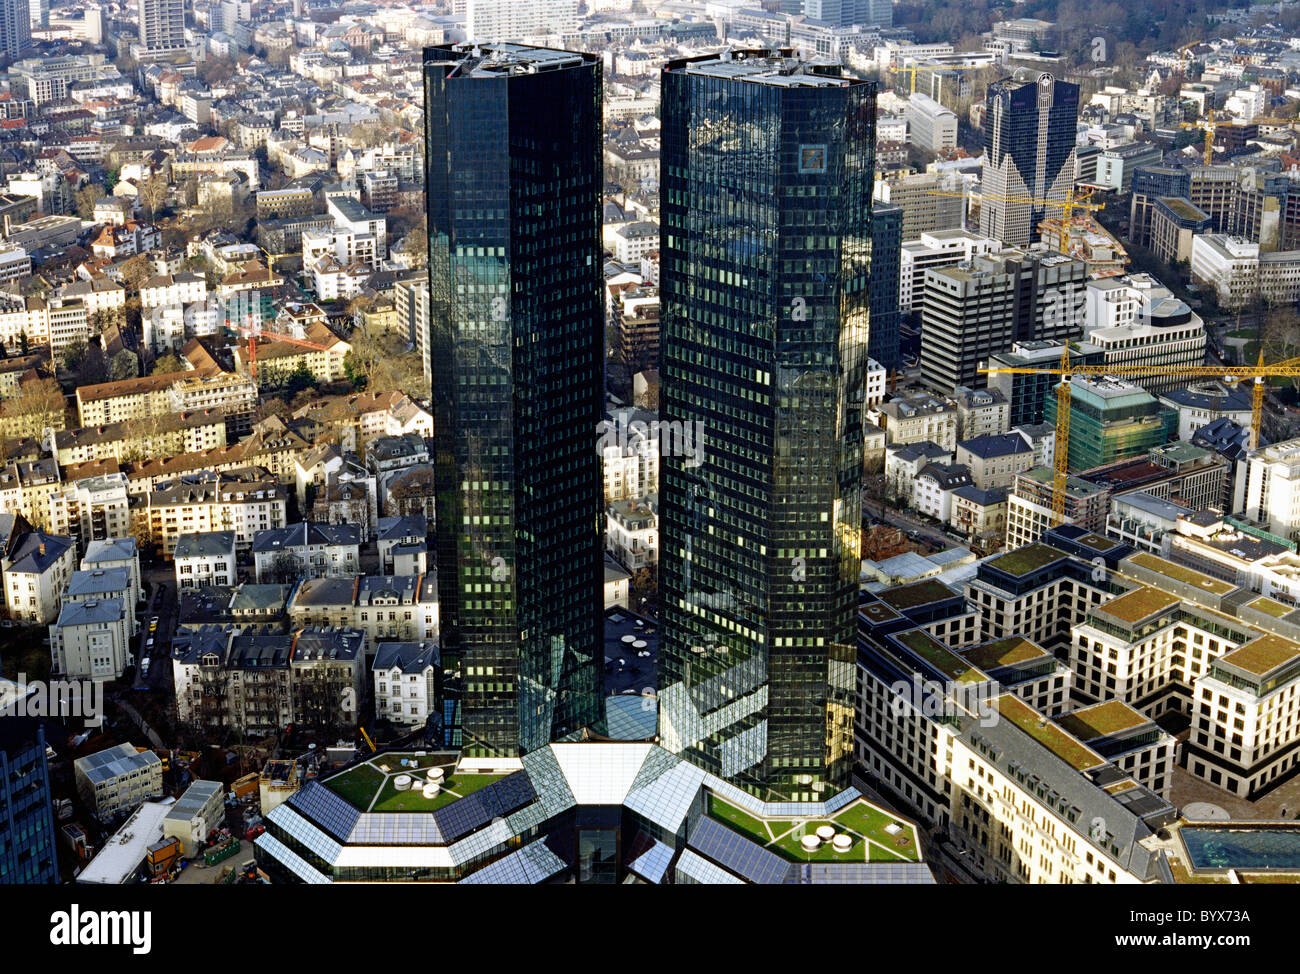 Vista aerea di torri gemelle della Deutsche Bank (Greentowers) nella città tedesca di Francoforte am Main. Foto Stock